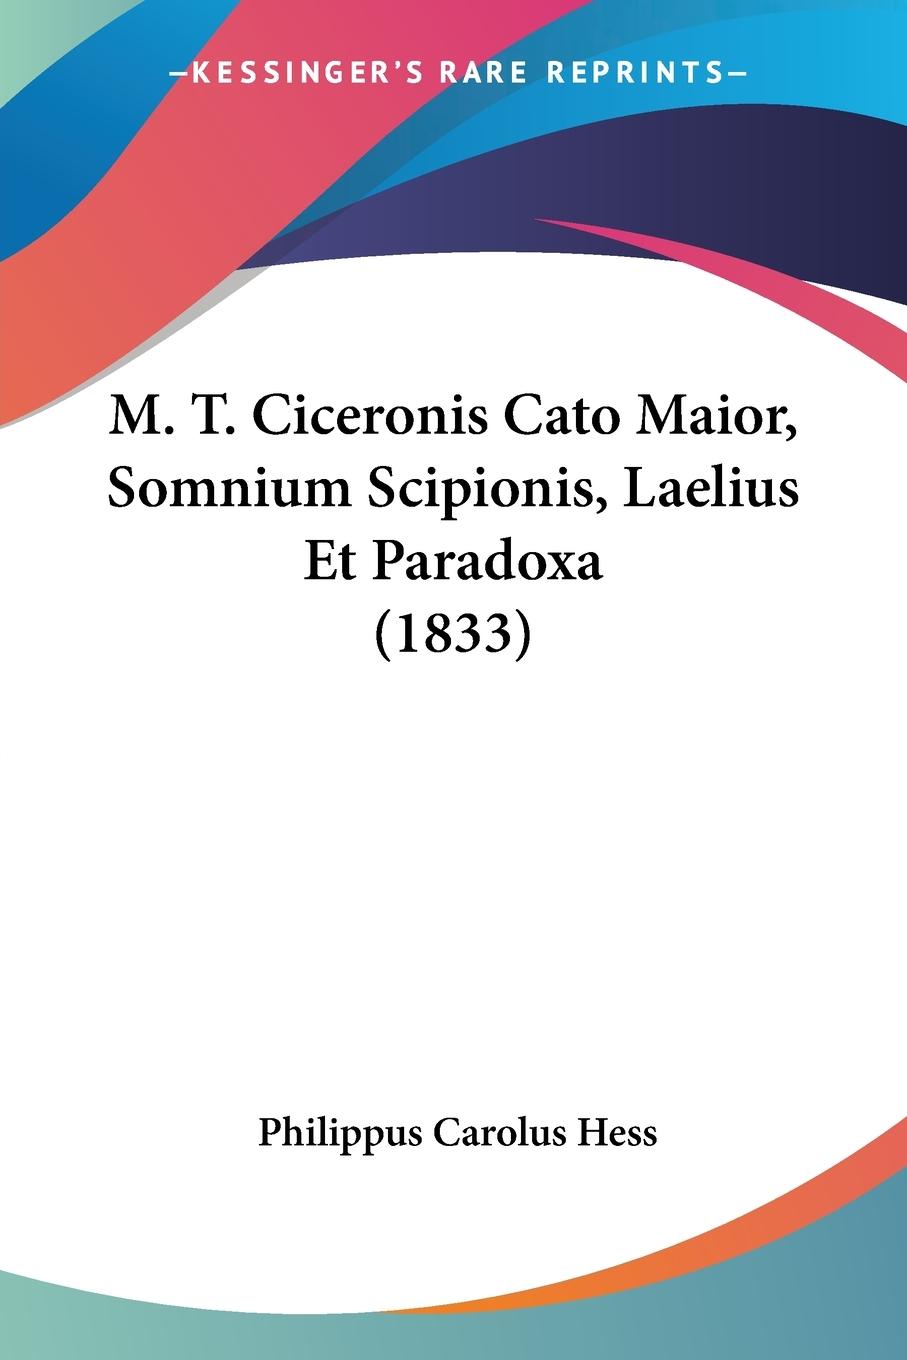 M. T. Ciceronis Cato Maior, Somnium Scipionis, Laelius Et Paradoxa (1833) - Hess, Philippus Carolus